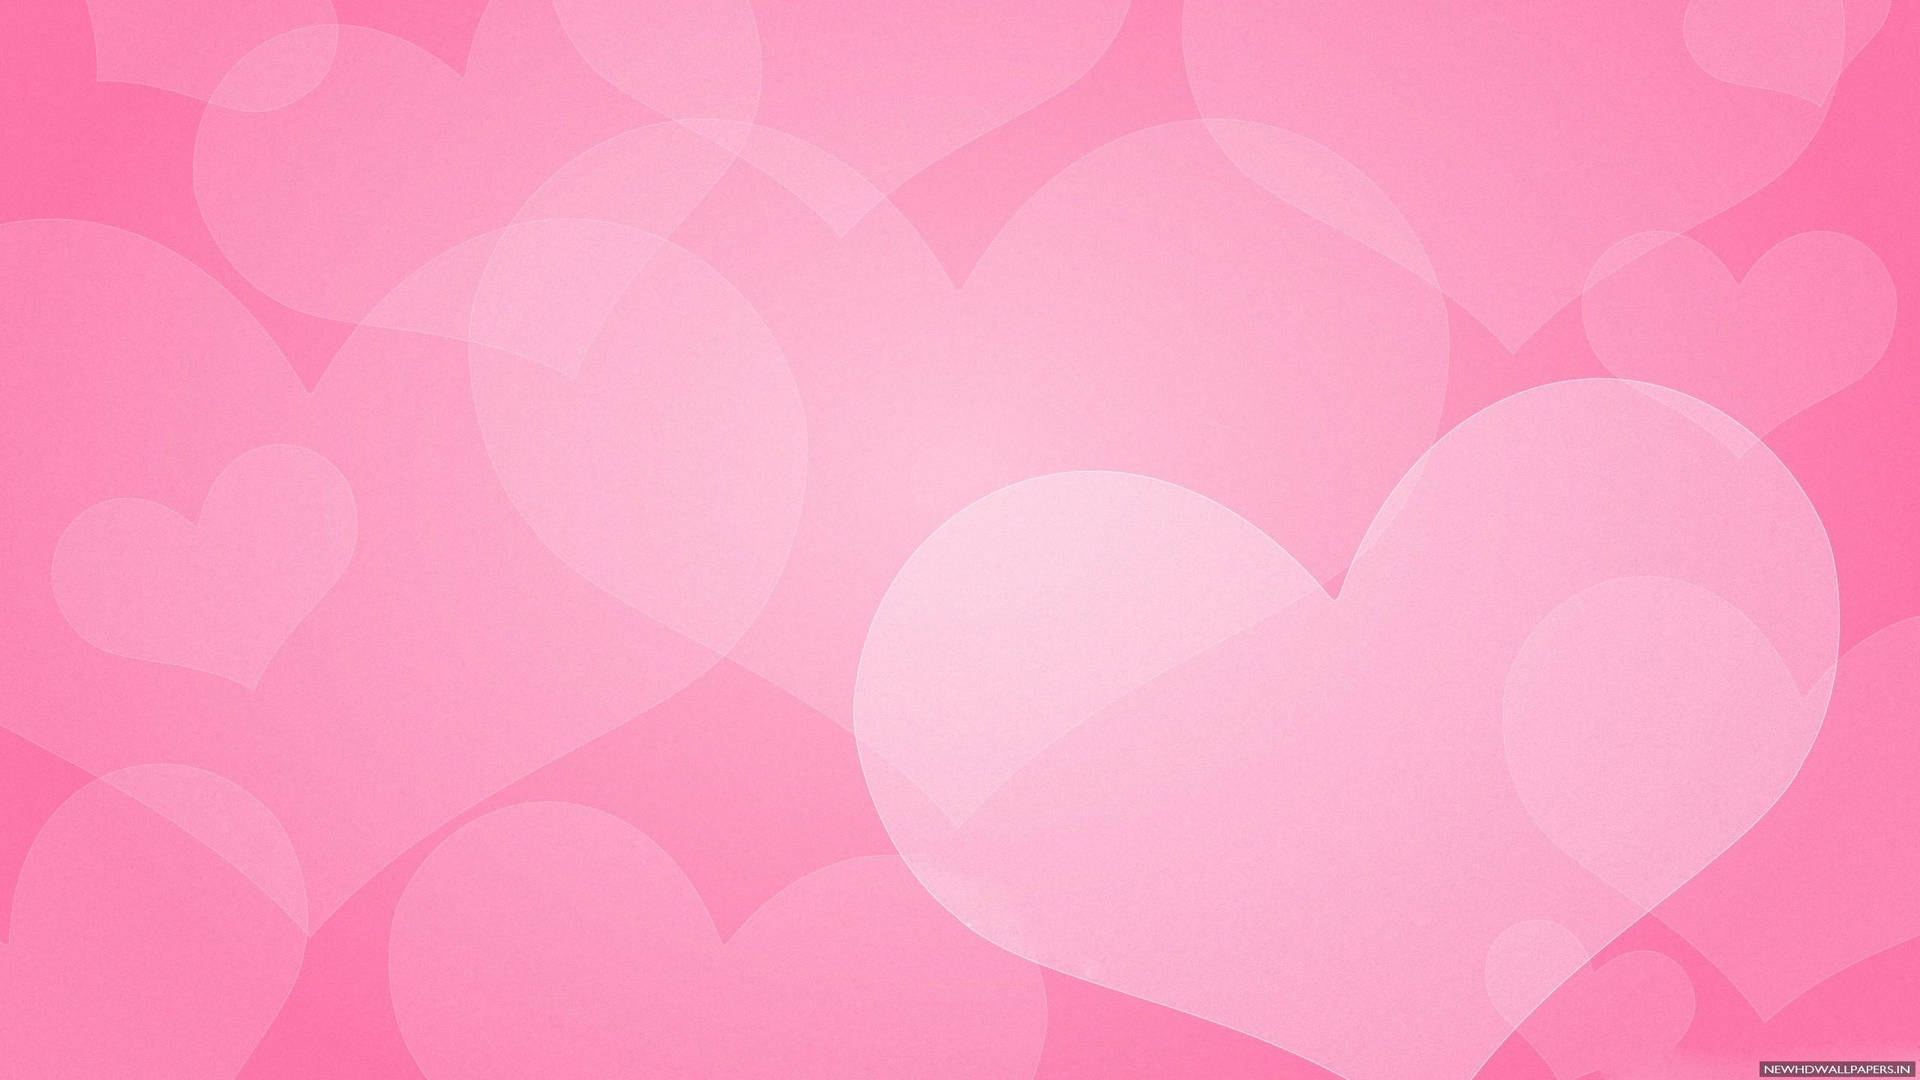 Hot Pink Faint Light Pink Hearts Wallpaper